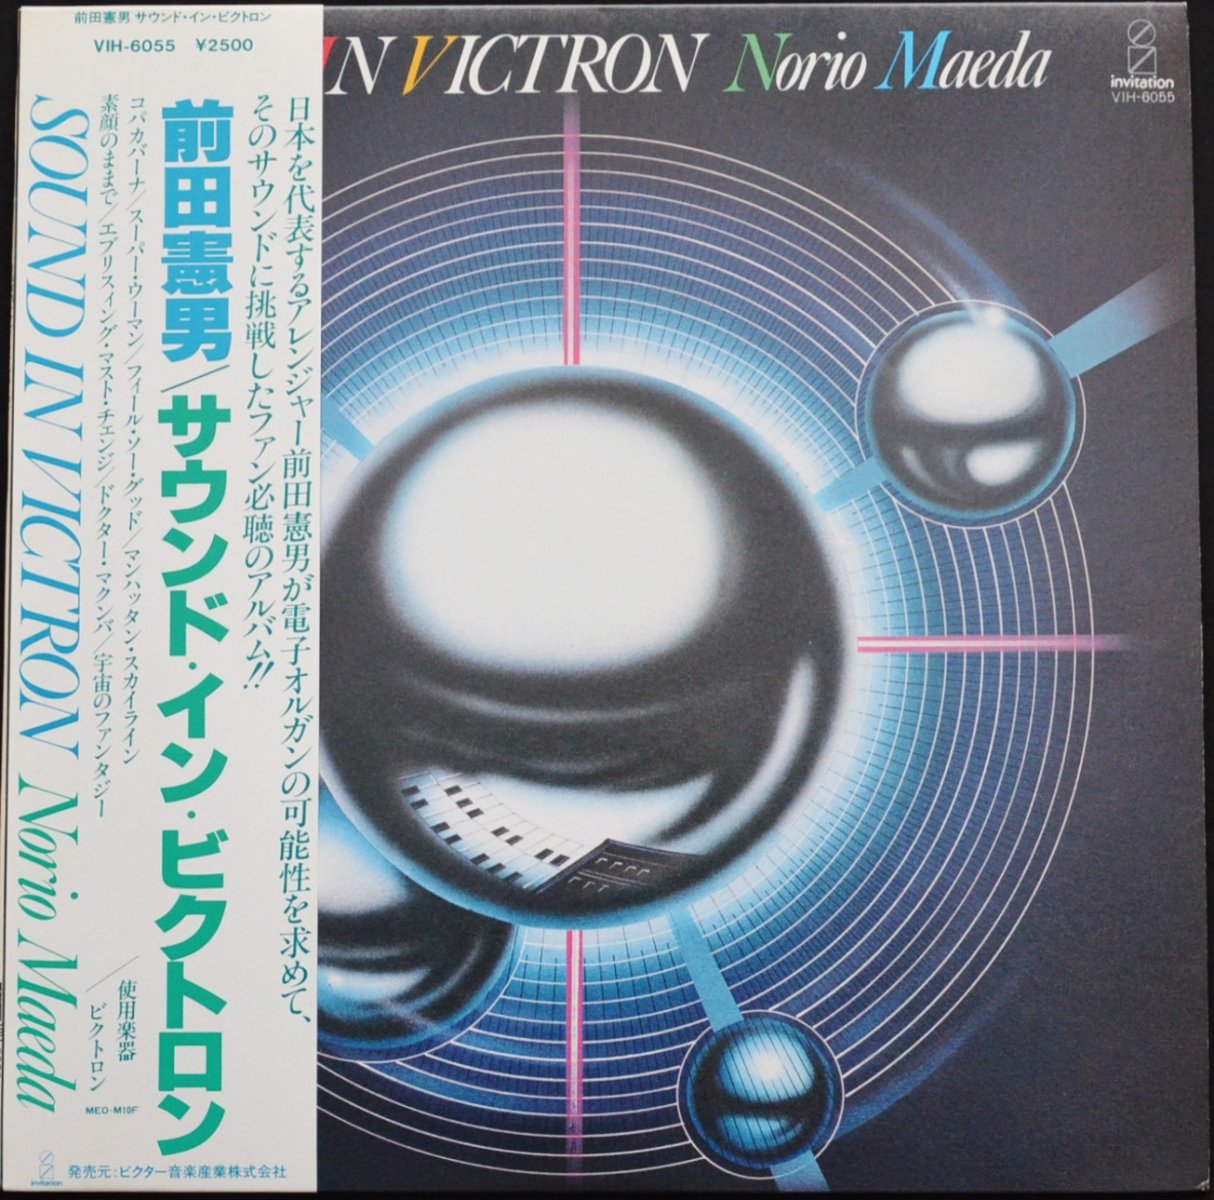 前田憲男 NORIO MAEDA / サウンド・イン・ビクトロン SOUND IN VICTRON 